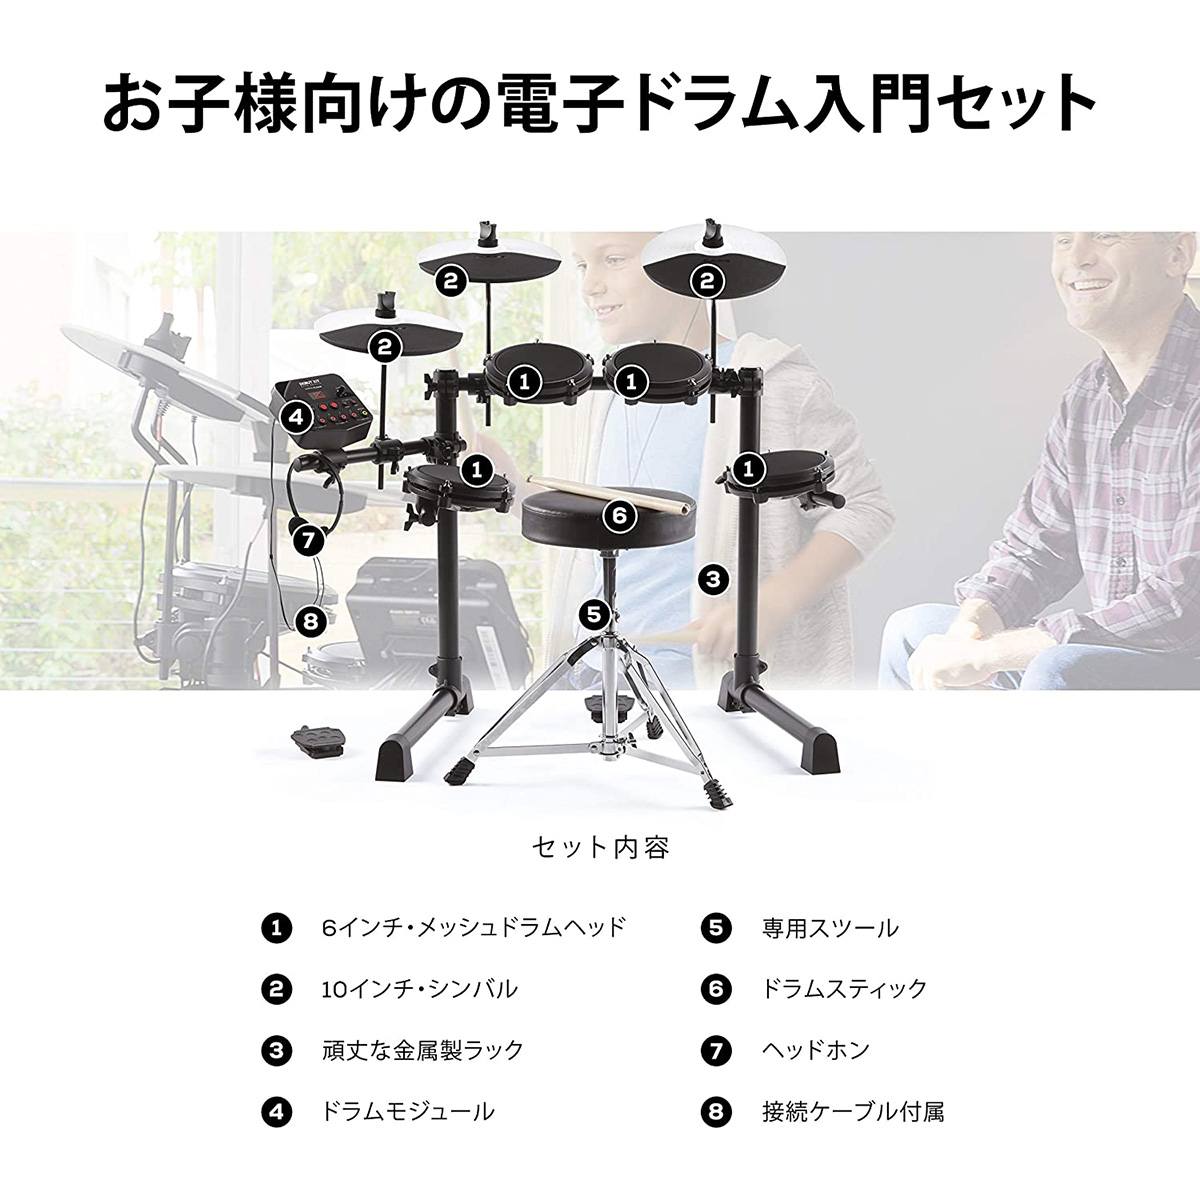 Alesis Debut Kit 電子ドラム 2023.6.11購入 キッズ